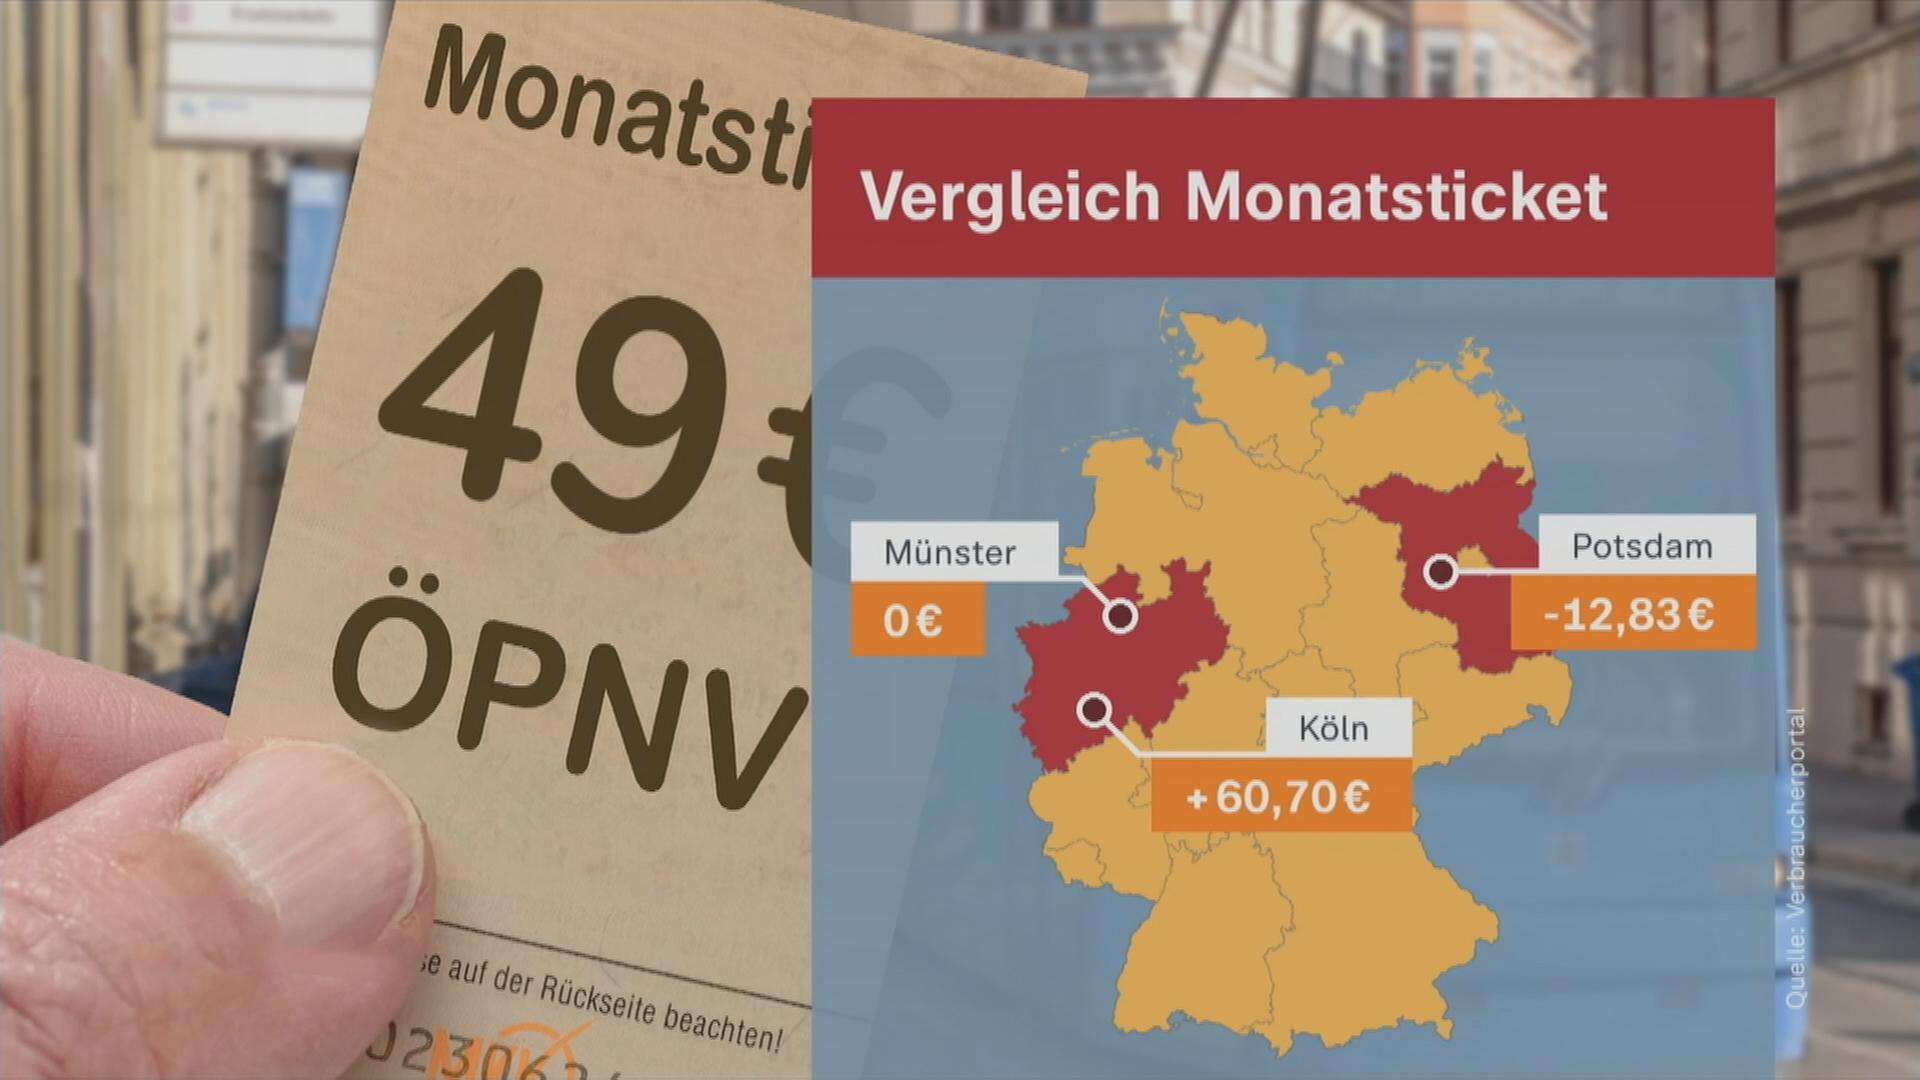 Graphik mit dem Vergleich von Monatsticket-Preisen in Münster, Köln und Potsdam.